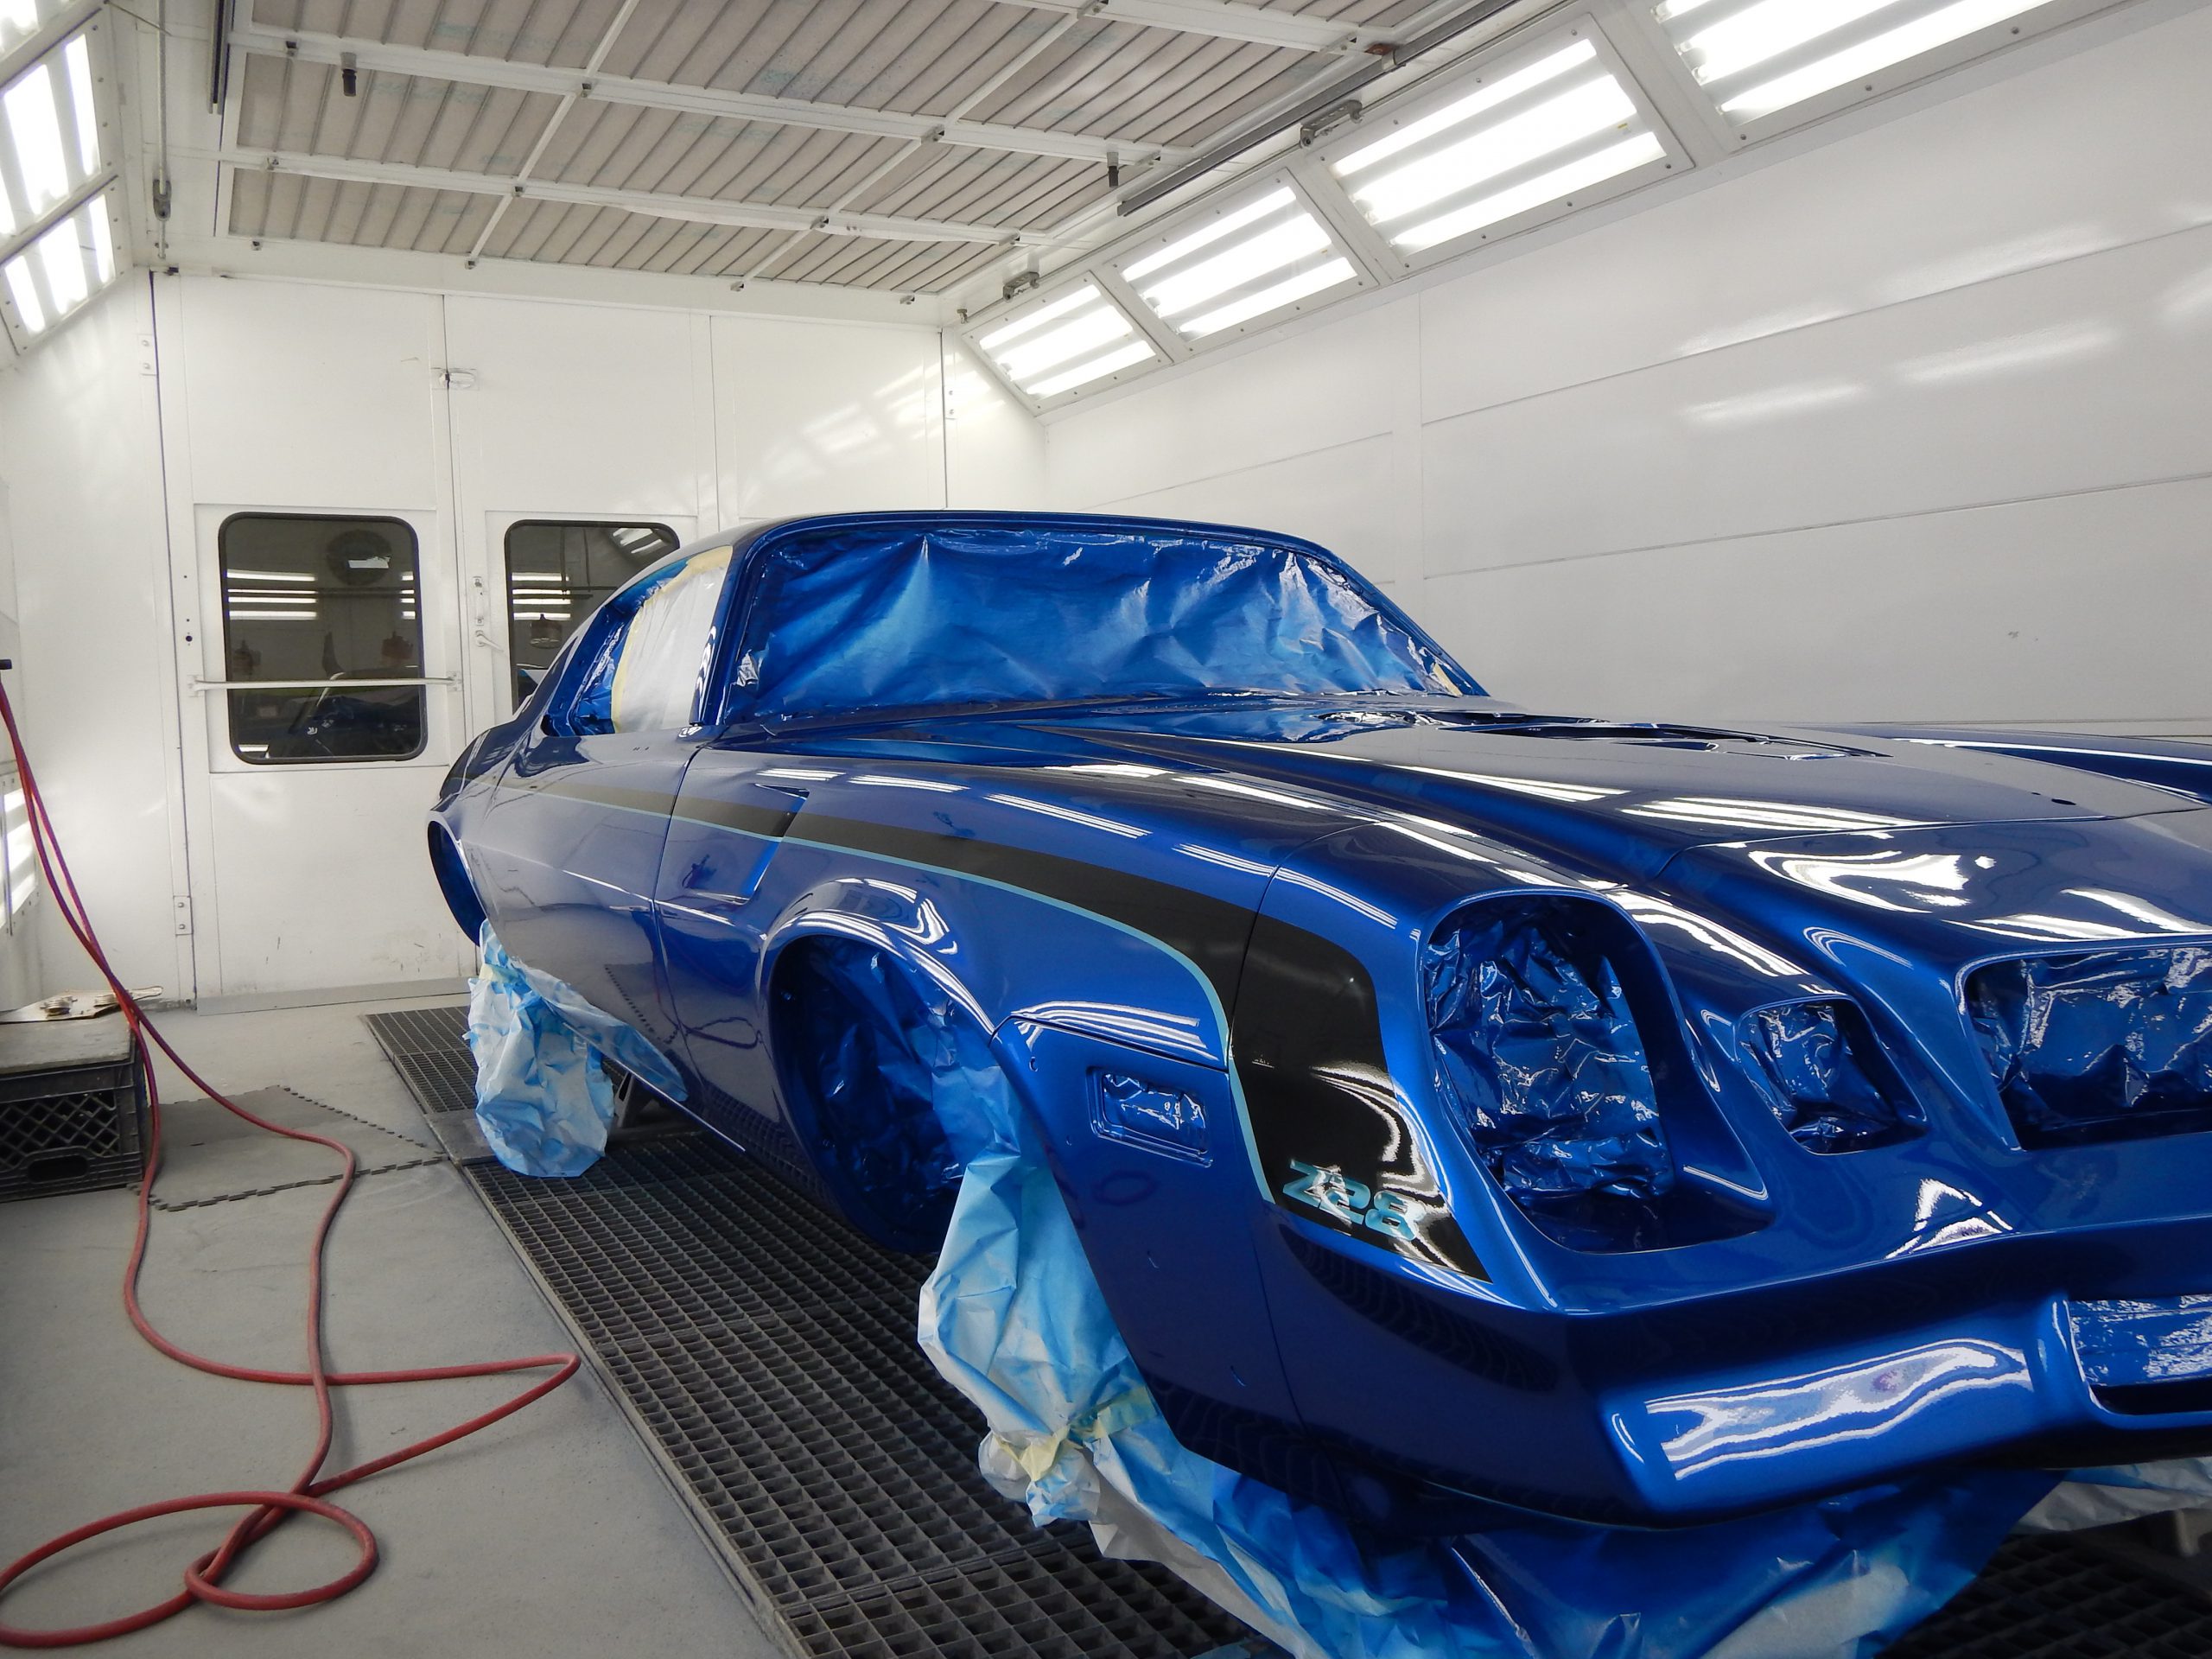 Paint Restoration Techniques for Vehicles